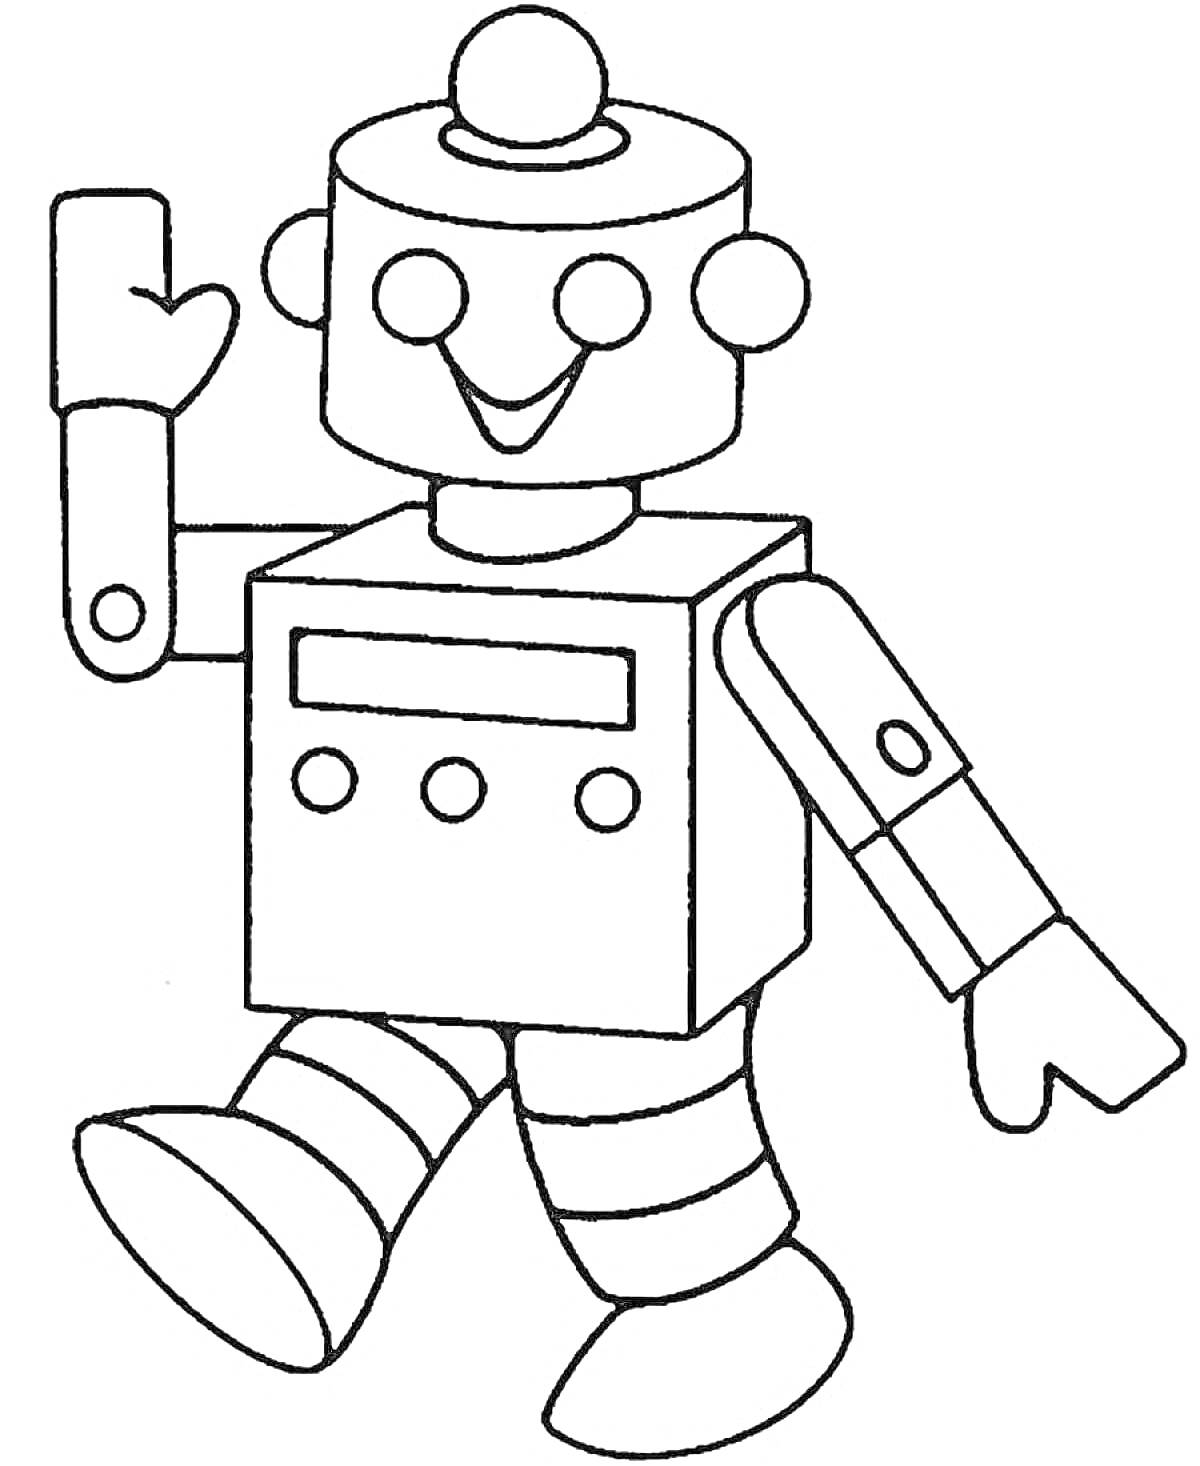 Раскраска Робот с кнопками, кружками на голове и цилиндрическими ногами, машет рукой